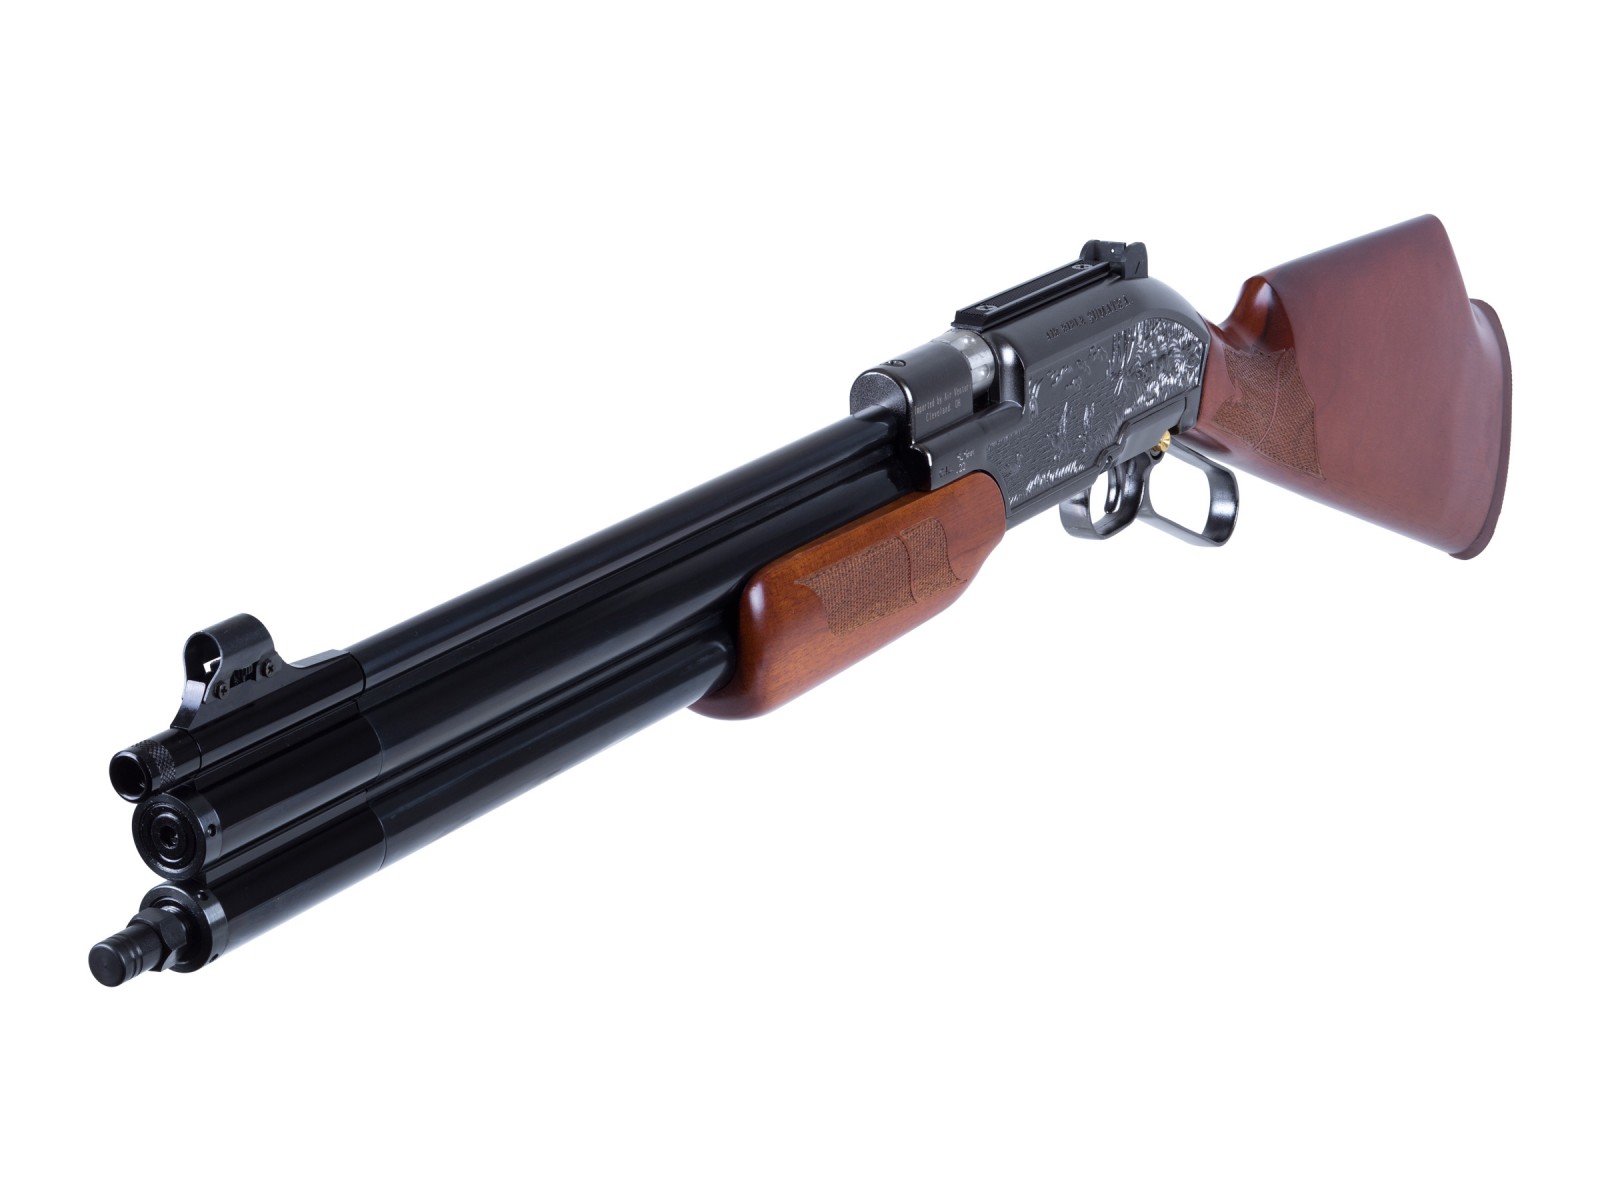 SENECA (Air Venturi) PCP Rifle Sumatra 500 